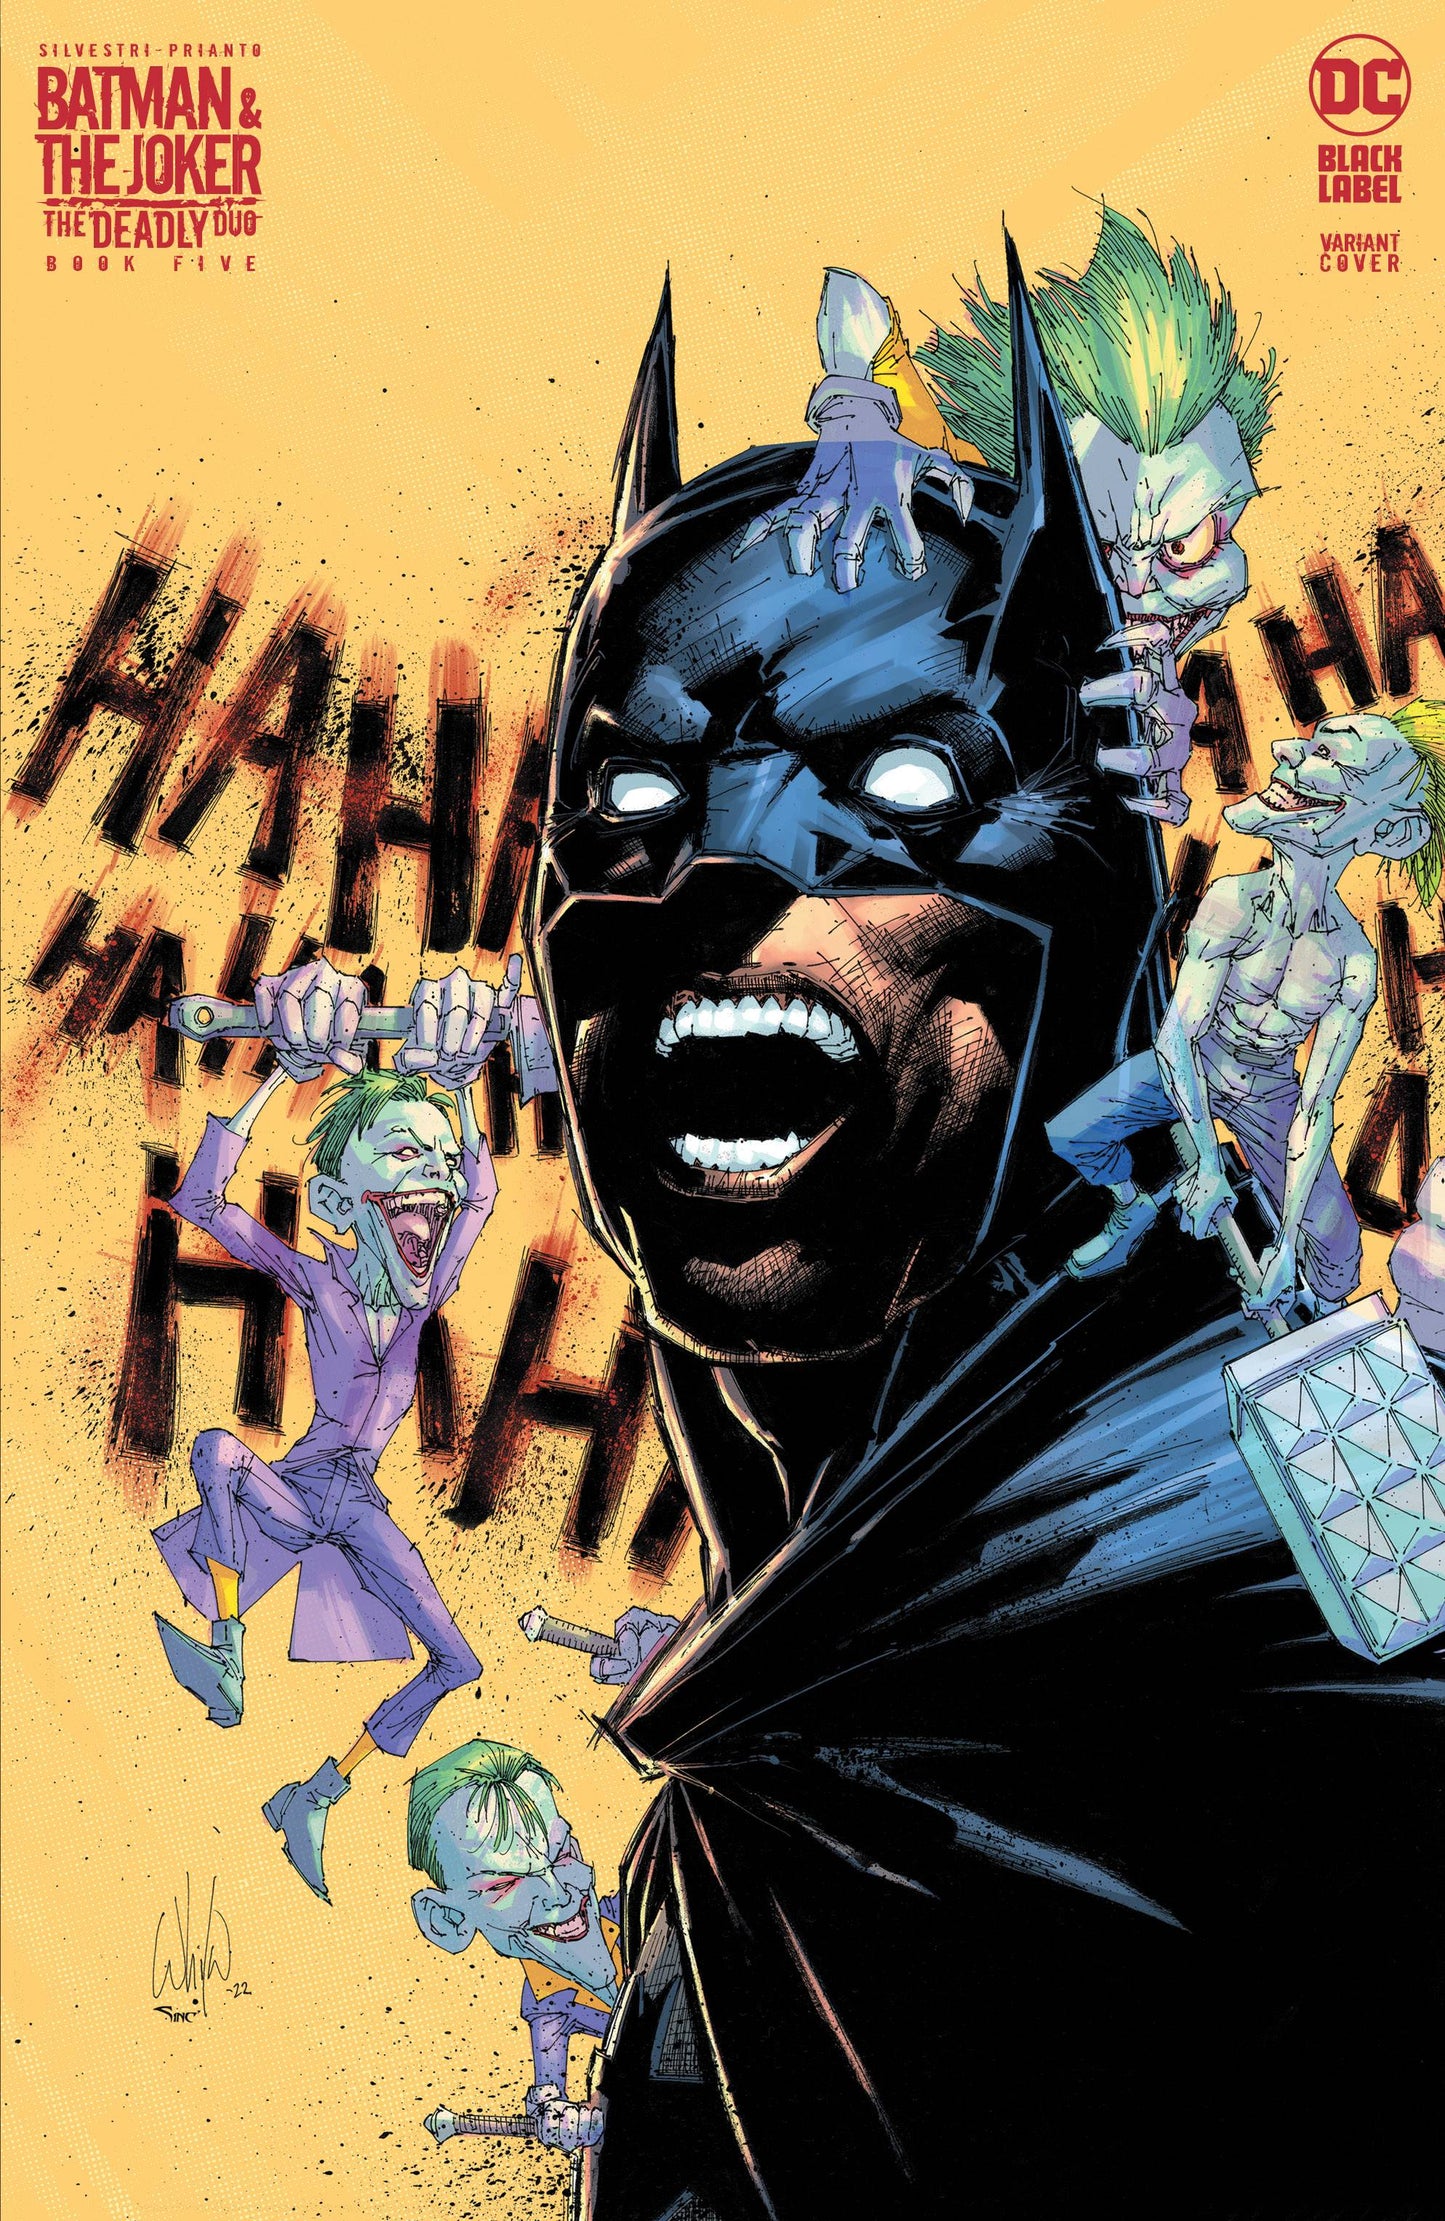 BATMAN JOKER DEADLY DUO #5 (OF 7)